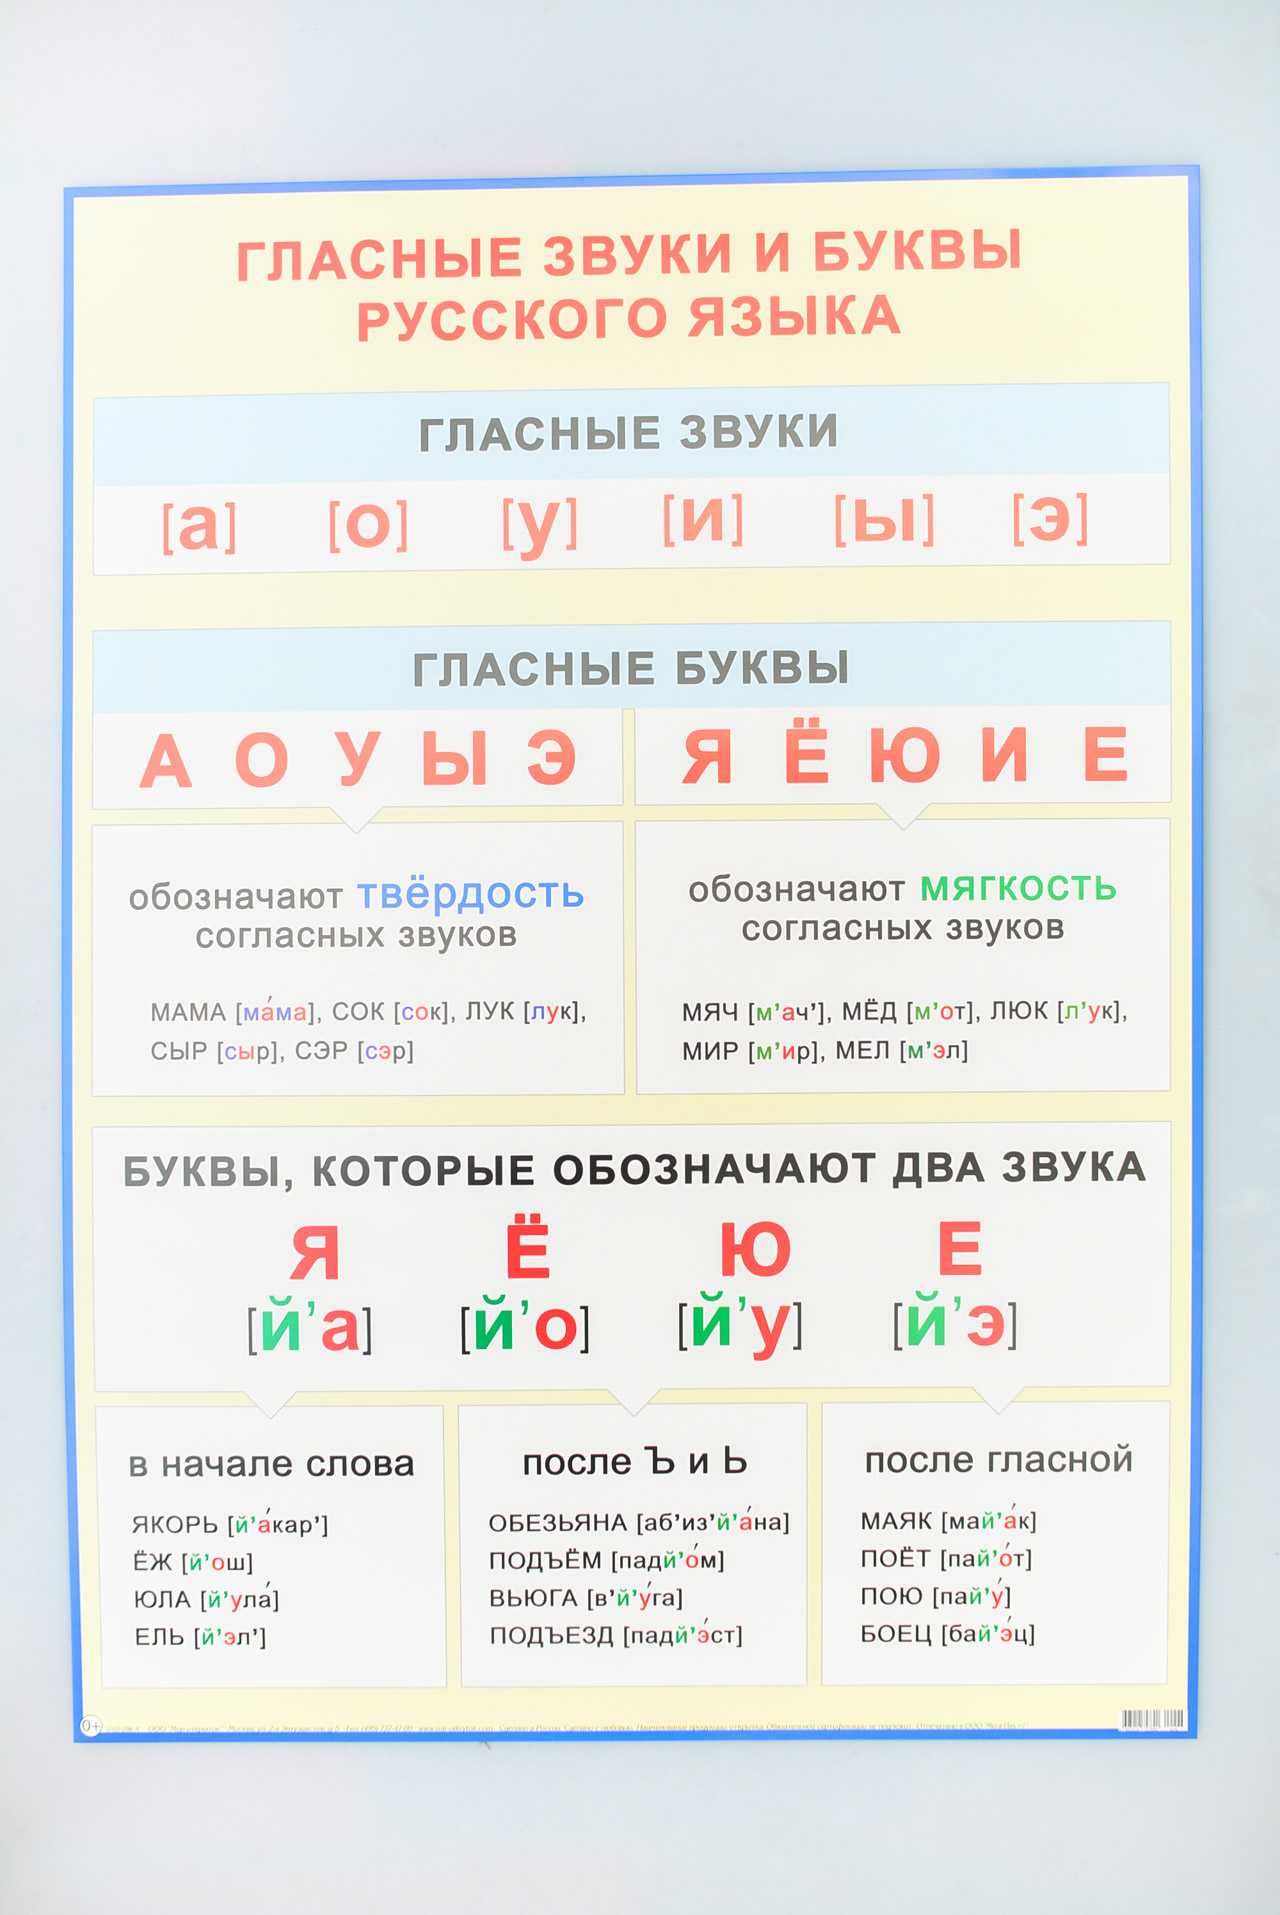 Гласные звуки и буквы. сколько их в русском языке?